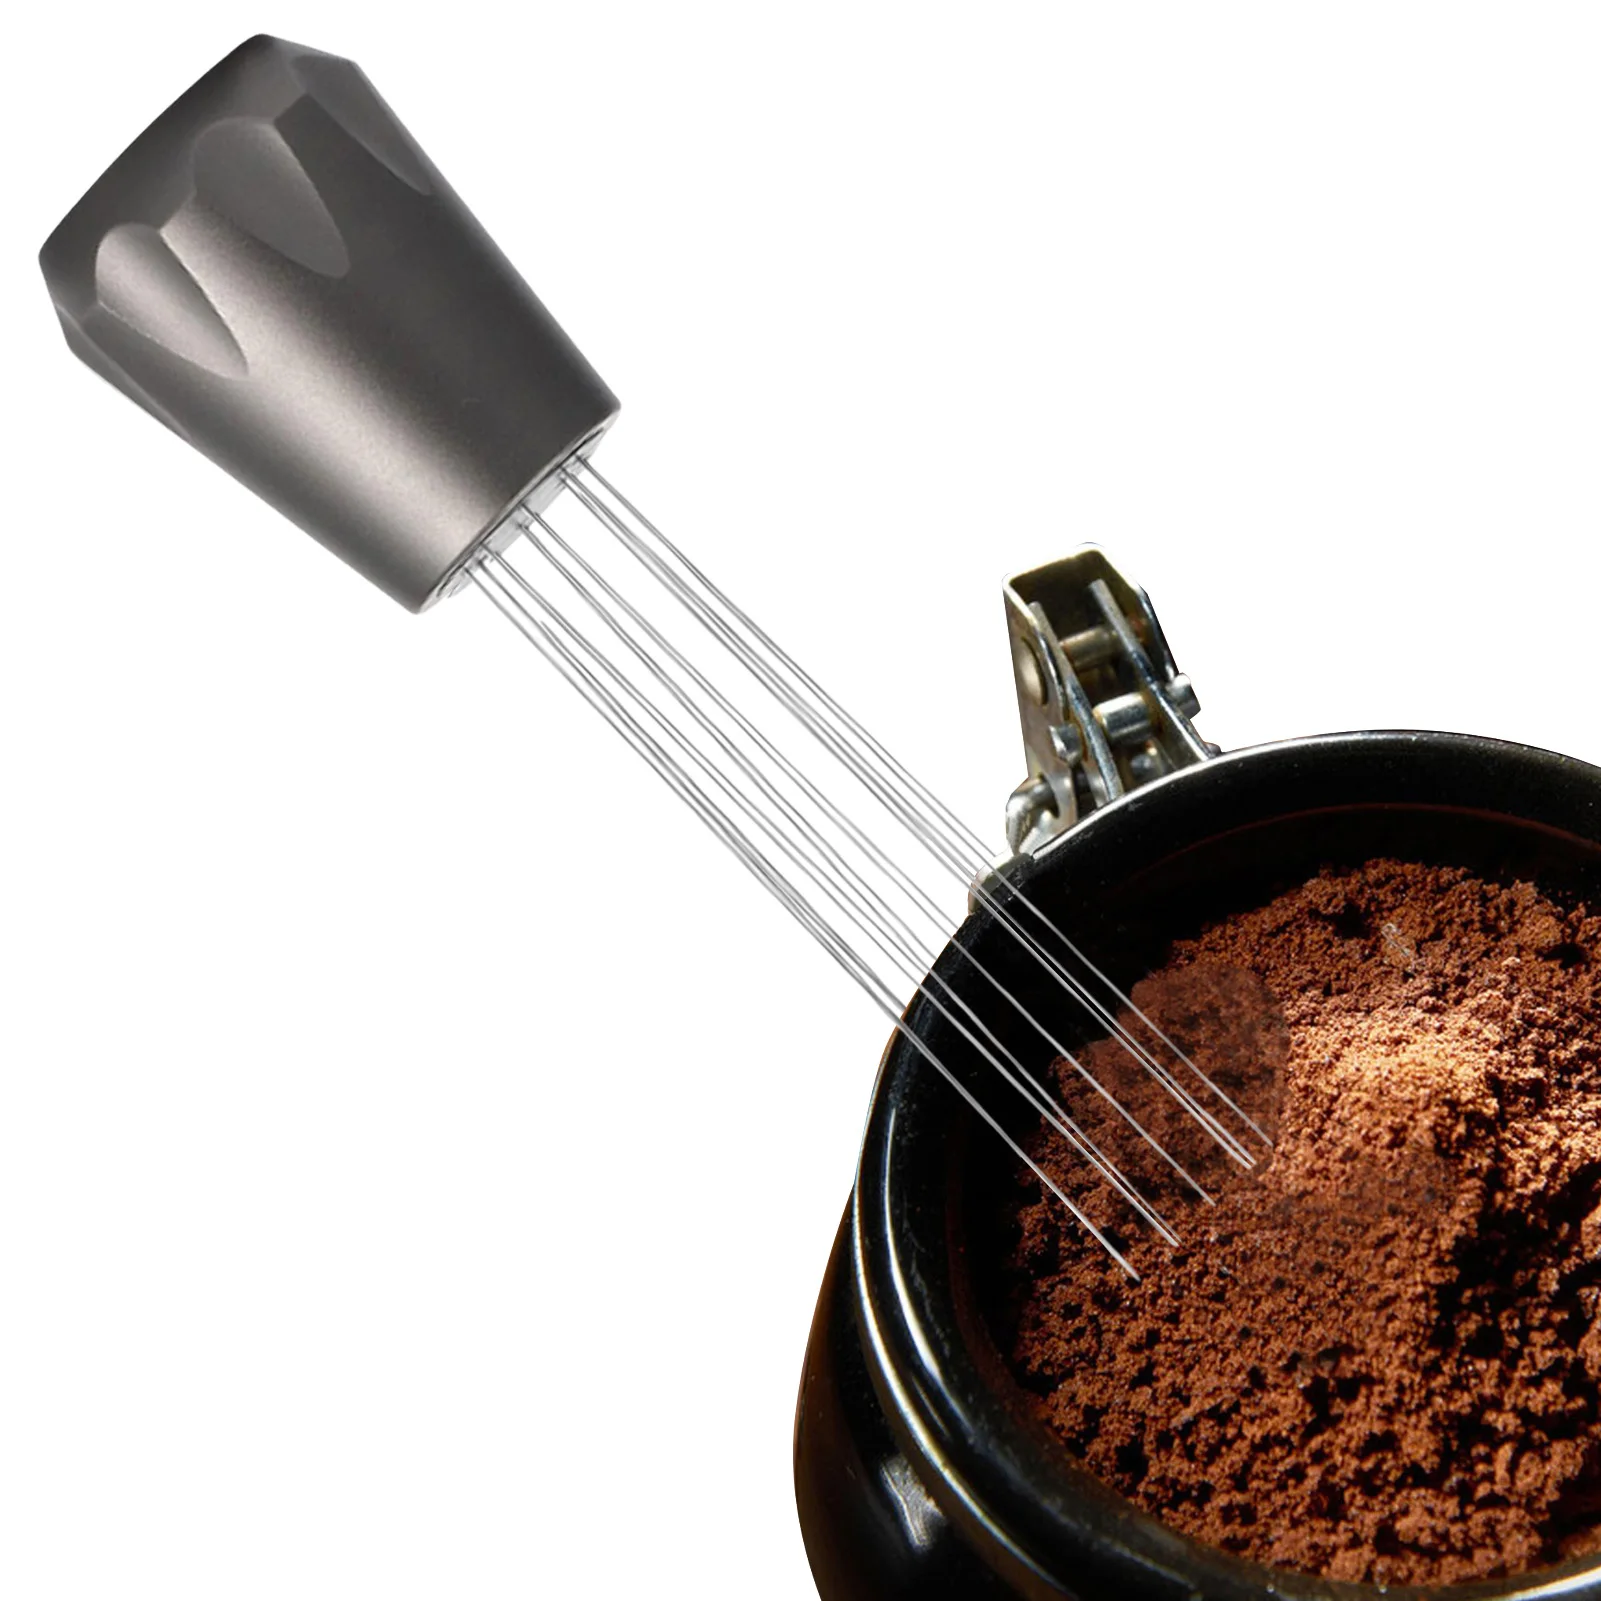 

Мешалка Для кофе эспрессо, инструмент для распределения кофе, игла, Мешалка Для кофейного порошка, Ручной смеситель, дистрибьютор, кухонные ...